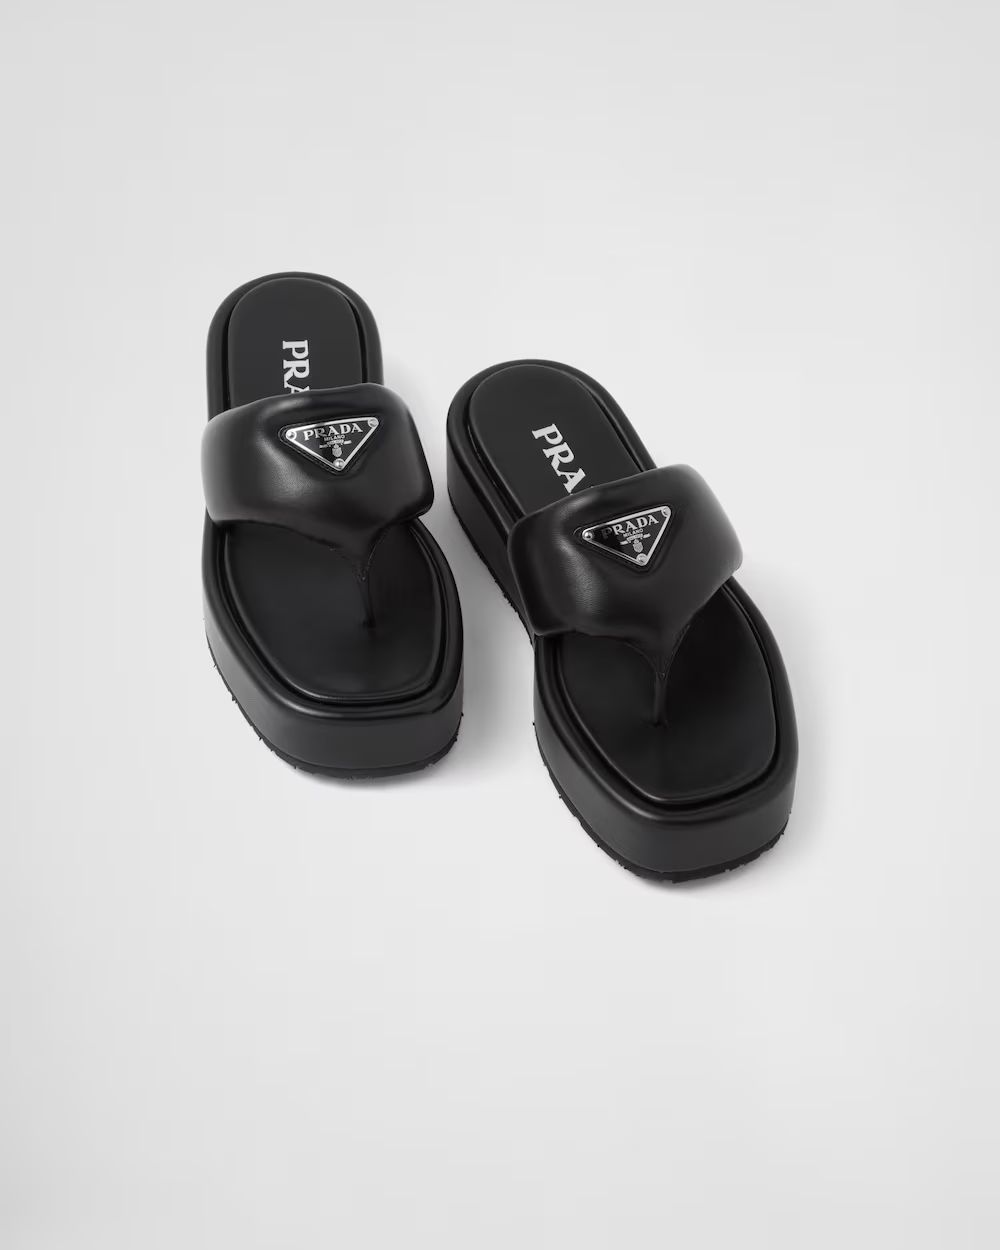 Prada Soft padded nappa leather thong wedge sandals | Prada Spa US